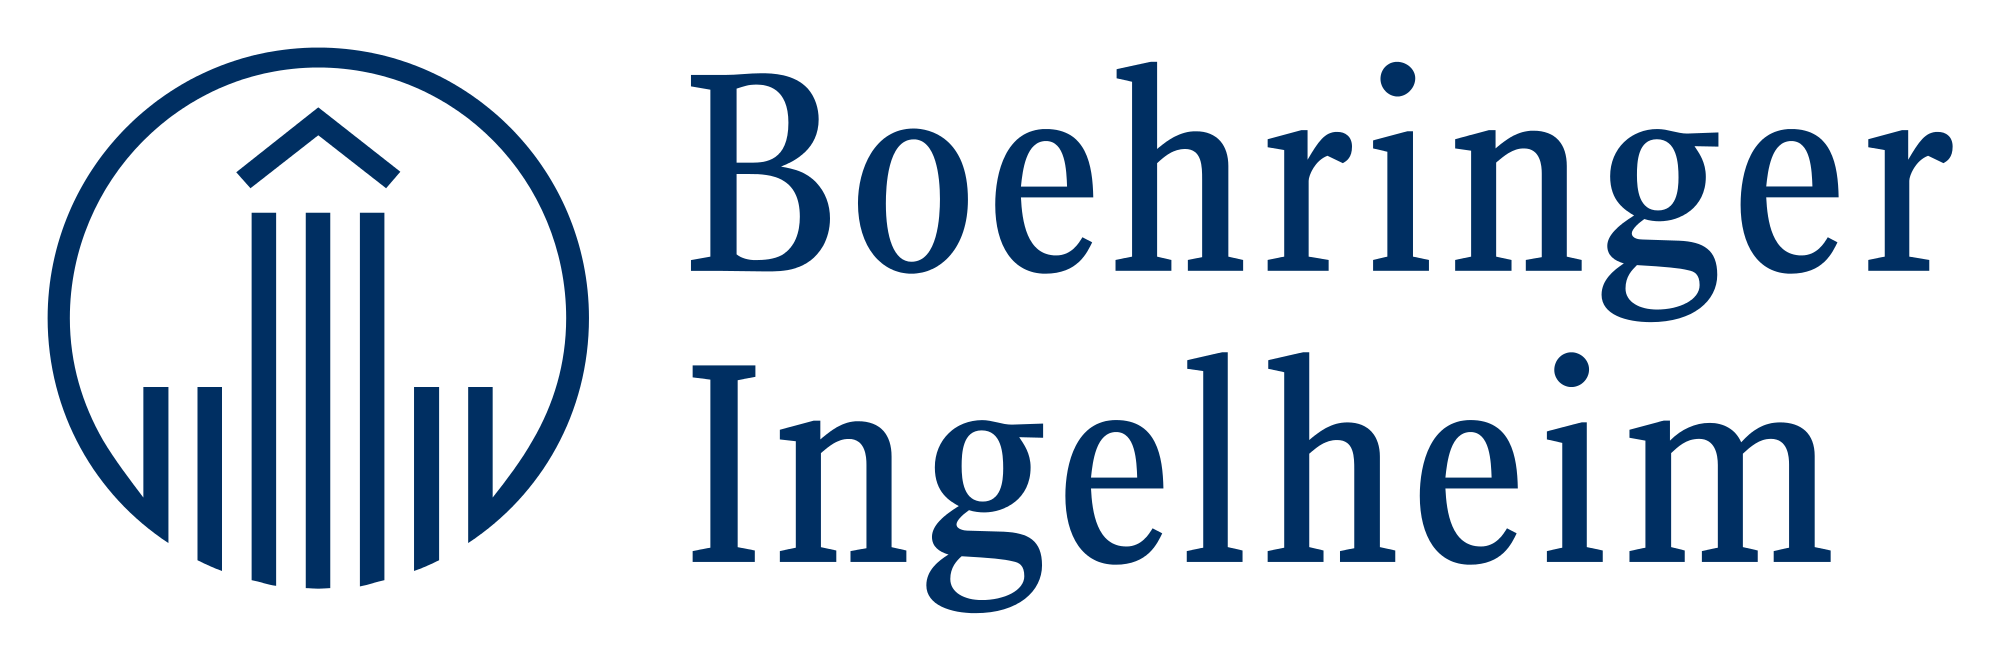 Boehringer Logo - Boehringer Ingelheim Logo.svg